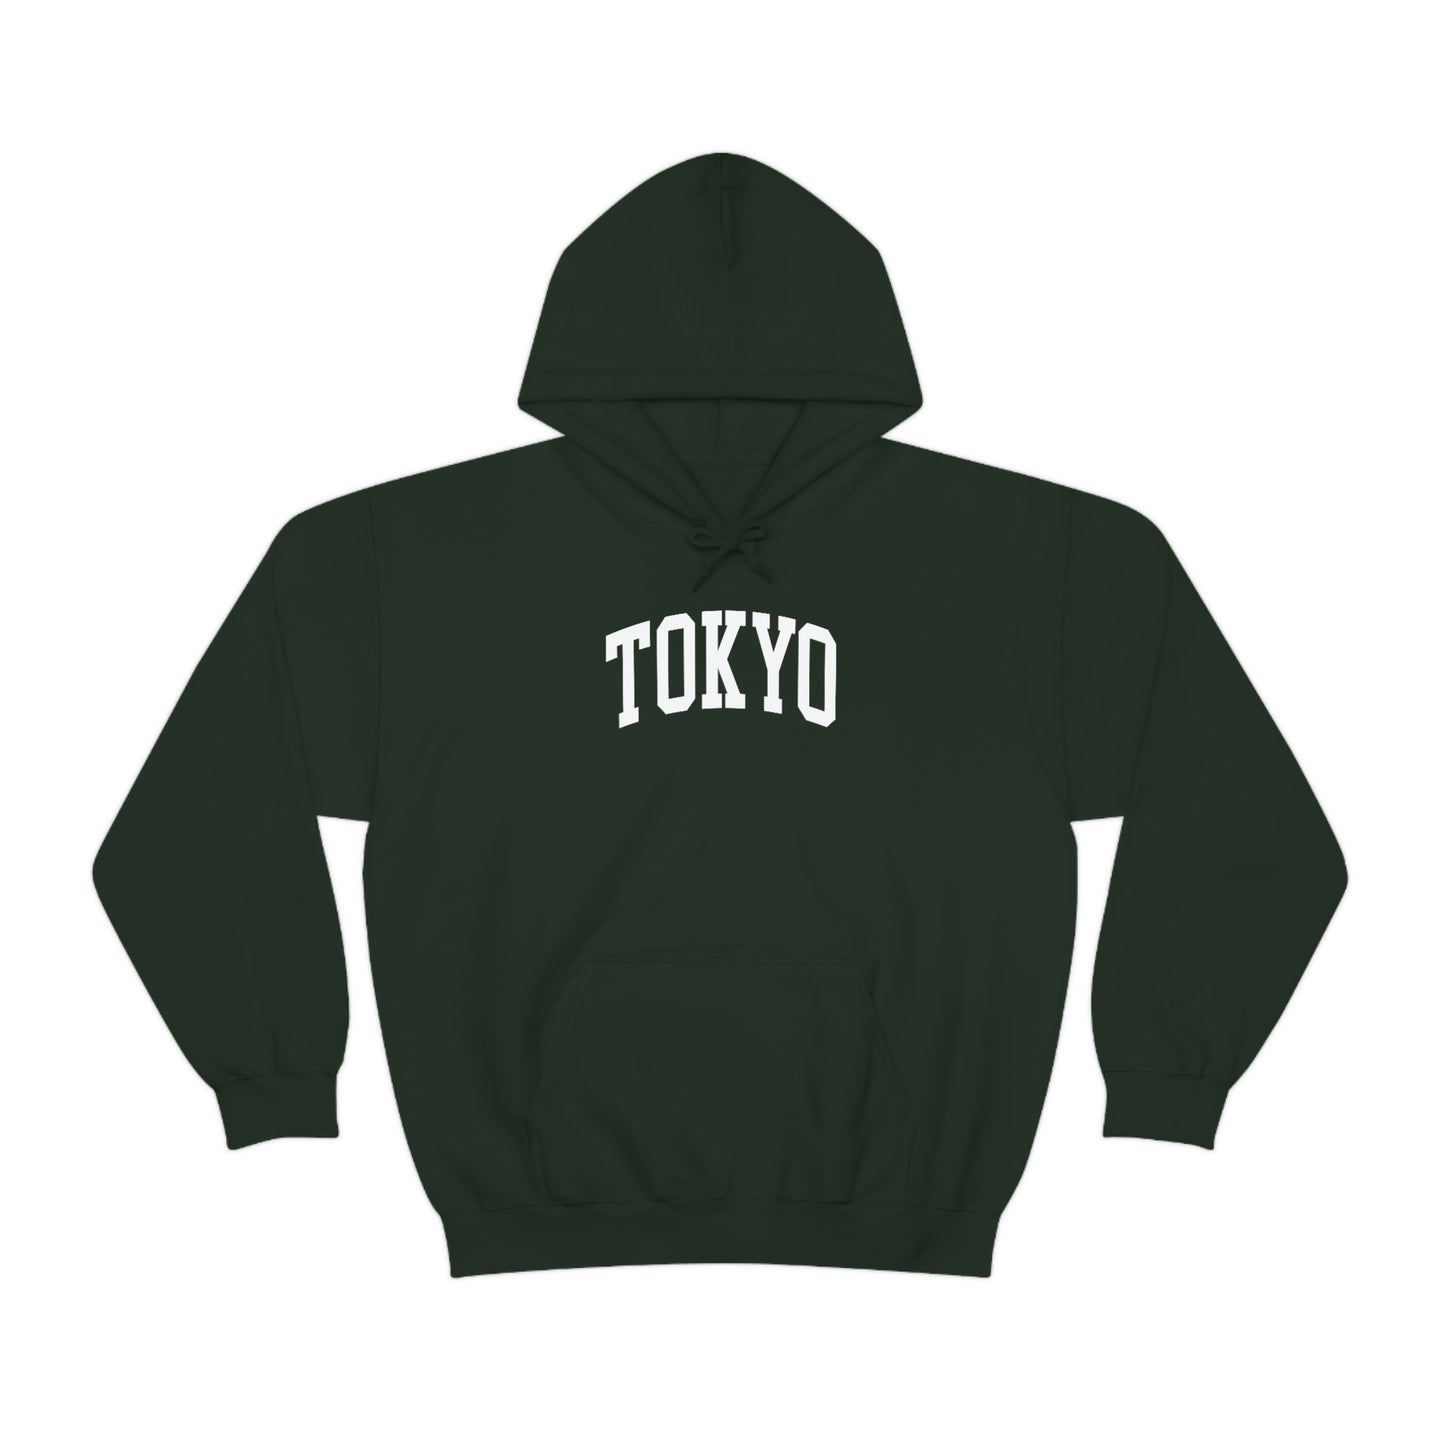 Tokyo Hoodie Tokyo Japan Hooded Sweatshirt College Style Pullover Vintage Inspired Sweater